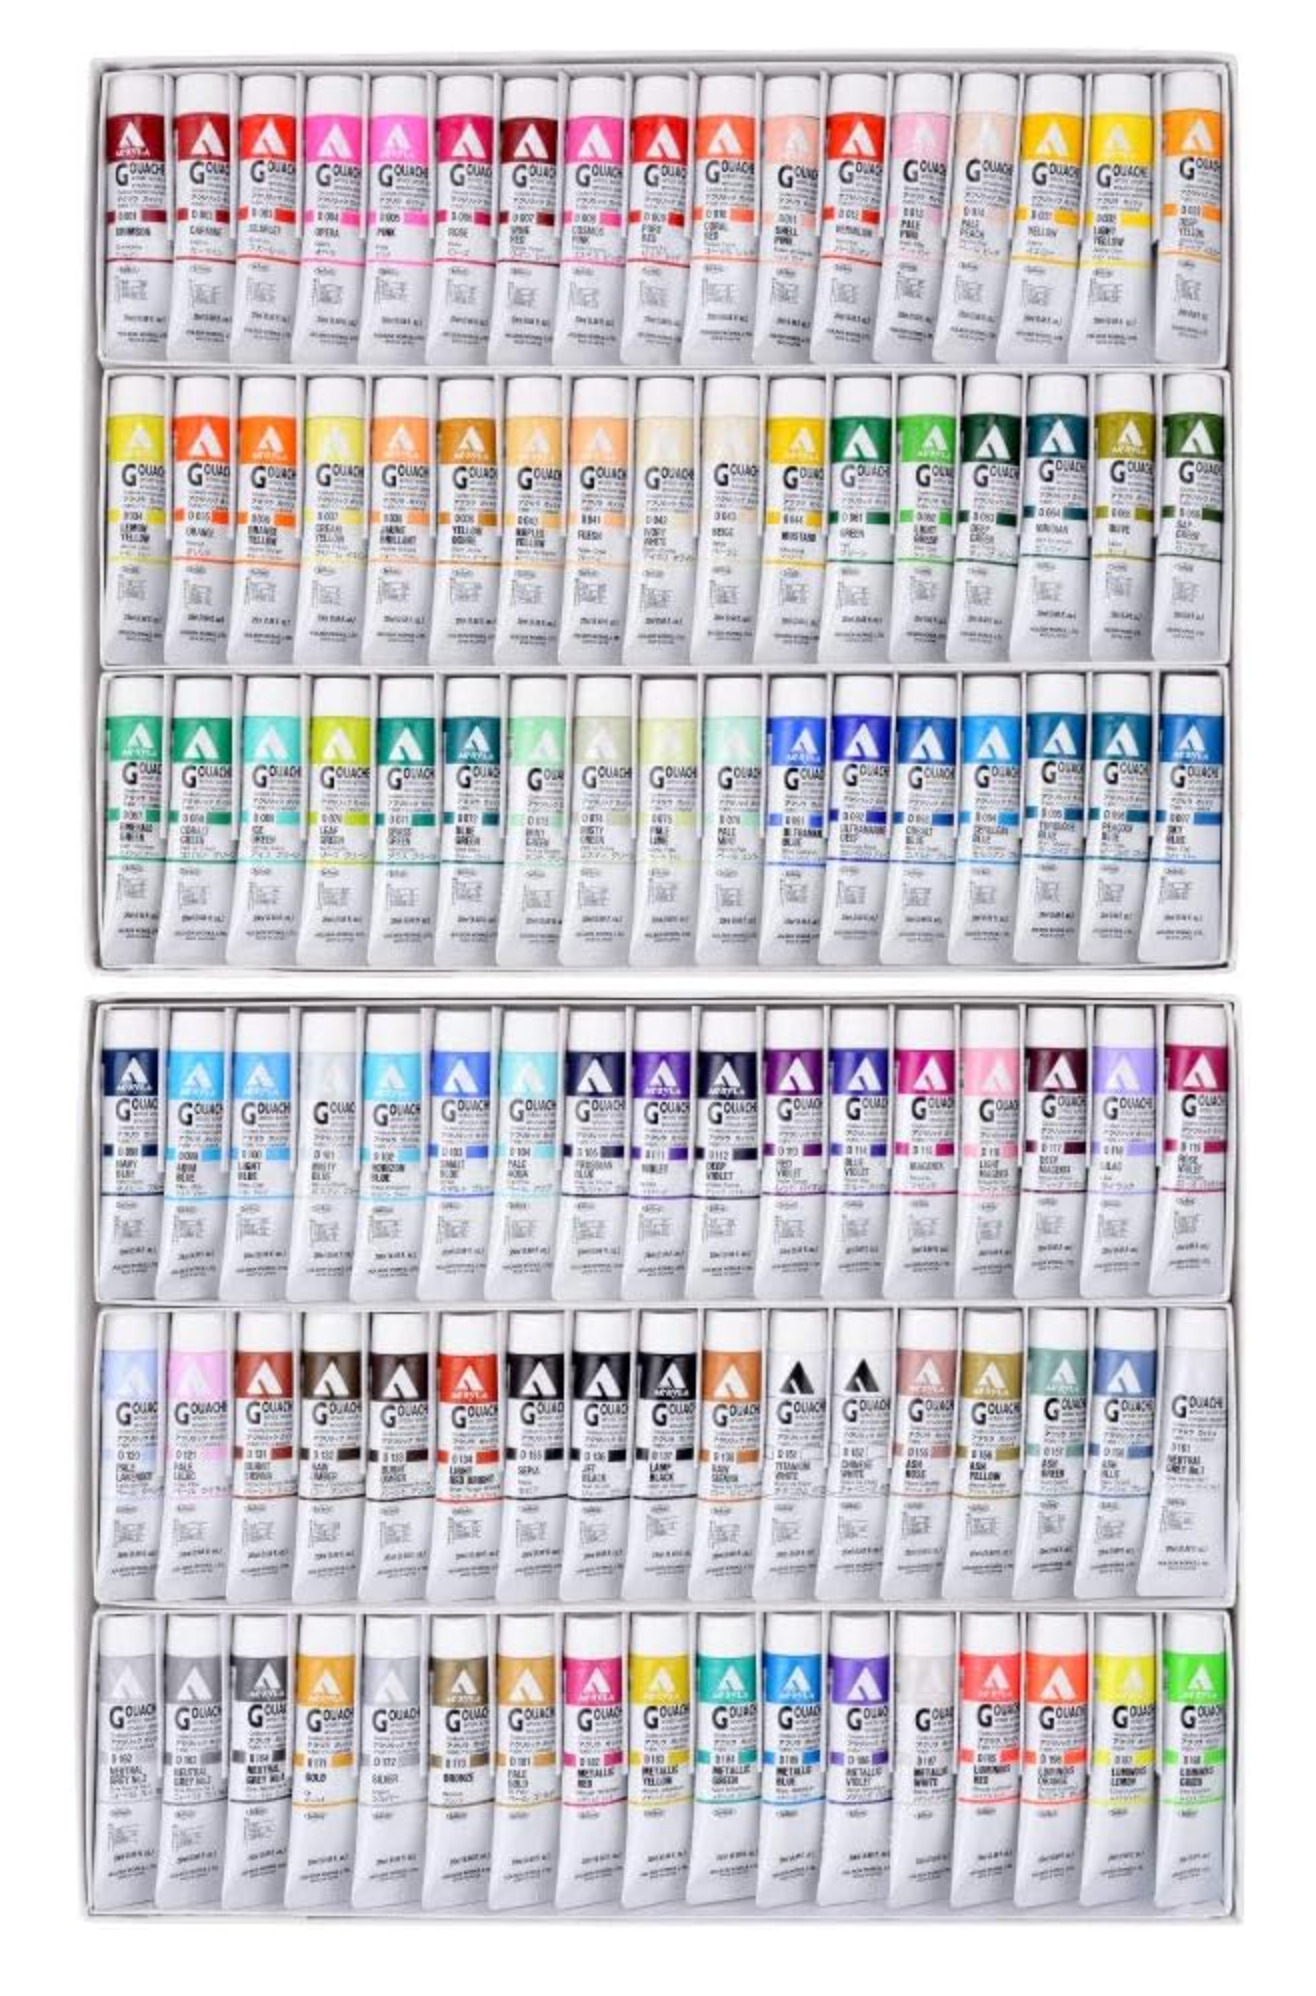 Montico Acrylic Paint Set - 24 Colors , Professional Painting Set